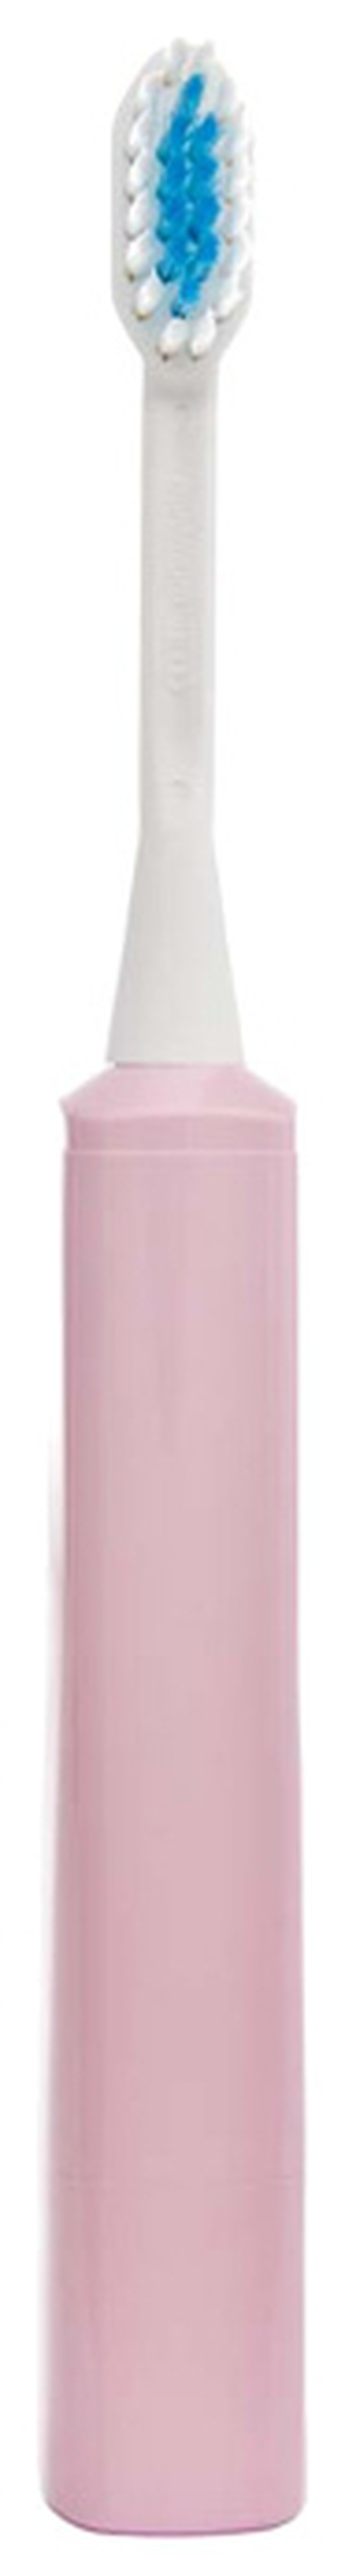 Электрическая зубная щетка Hapica Minus iON Case DBM-5P, розовая фото